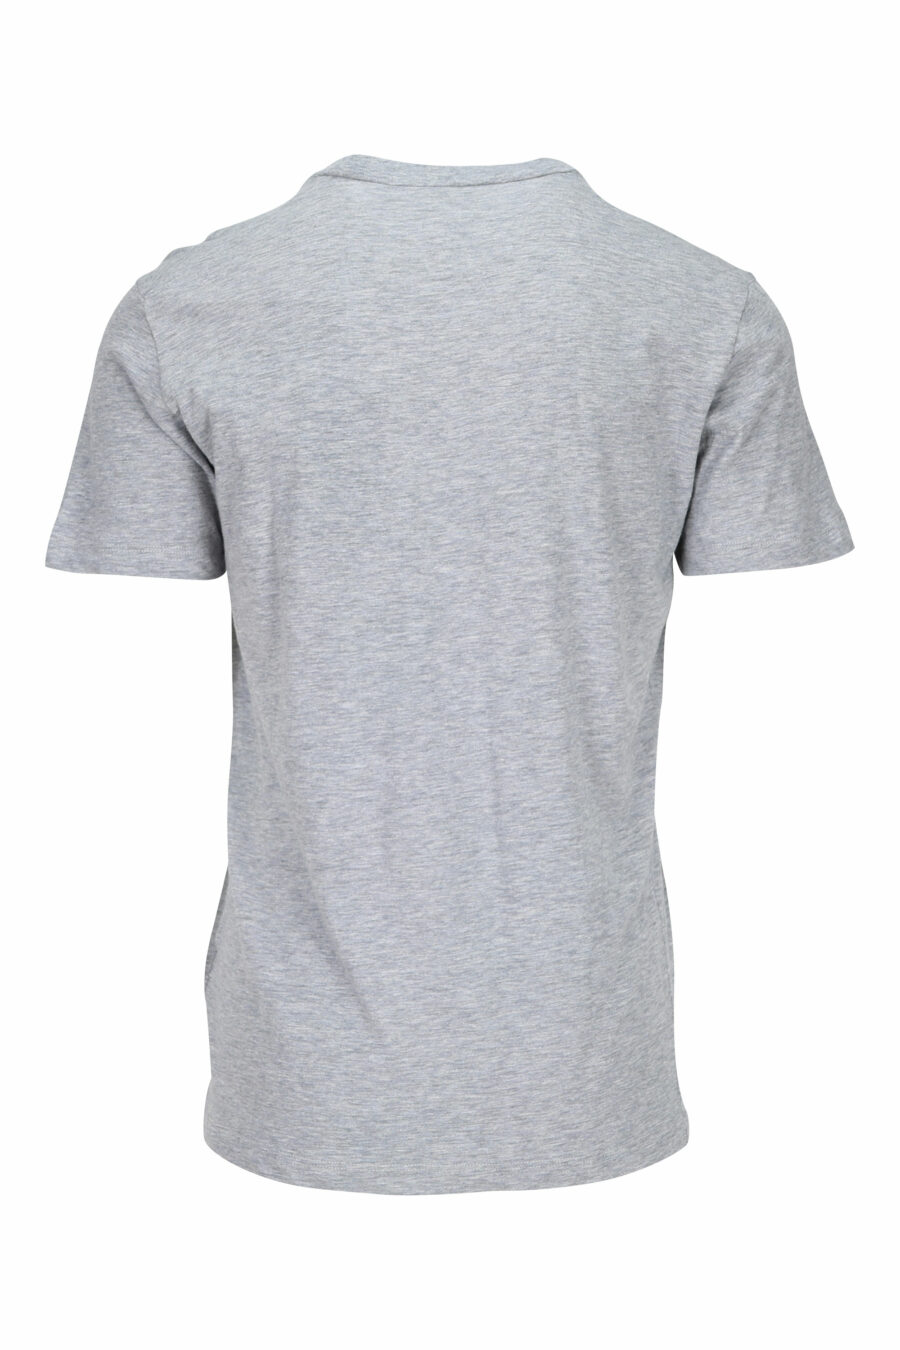 Camiseta gris con maxilogo clasico azul - 8054148116491 1